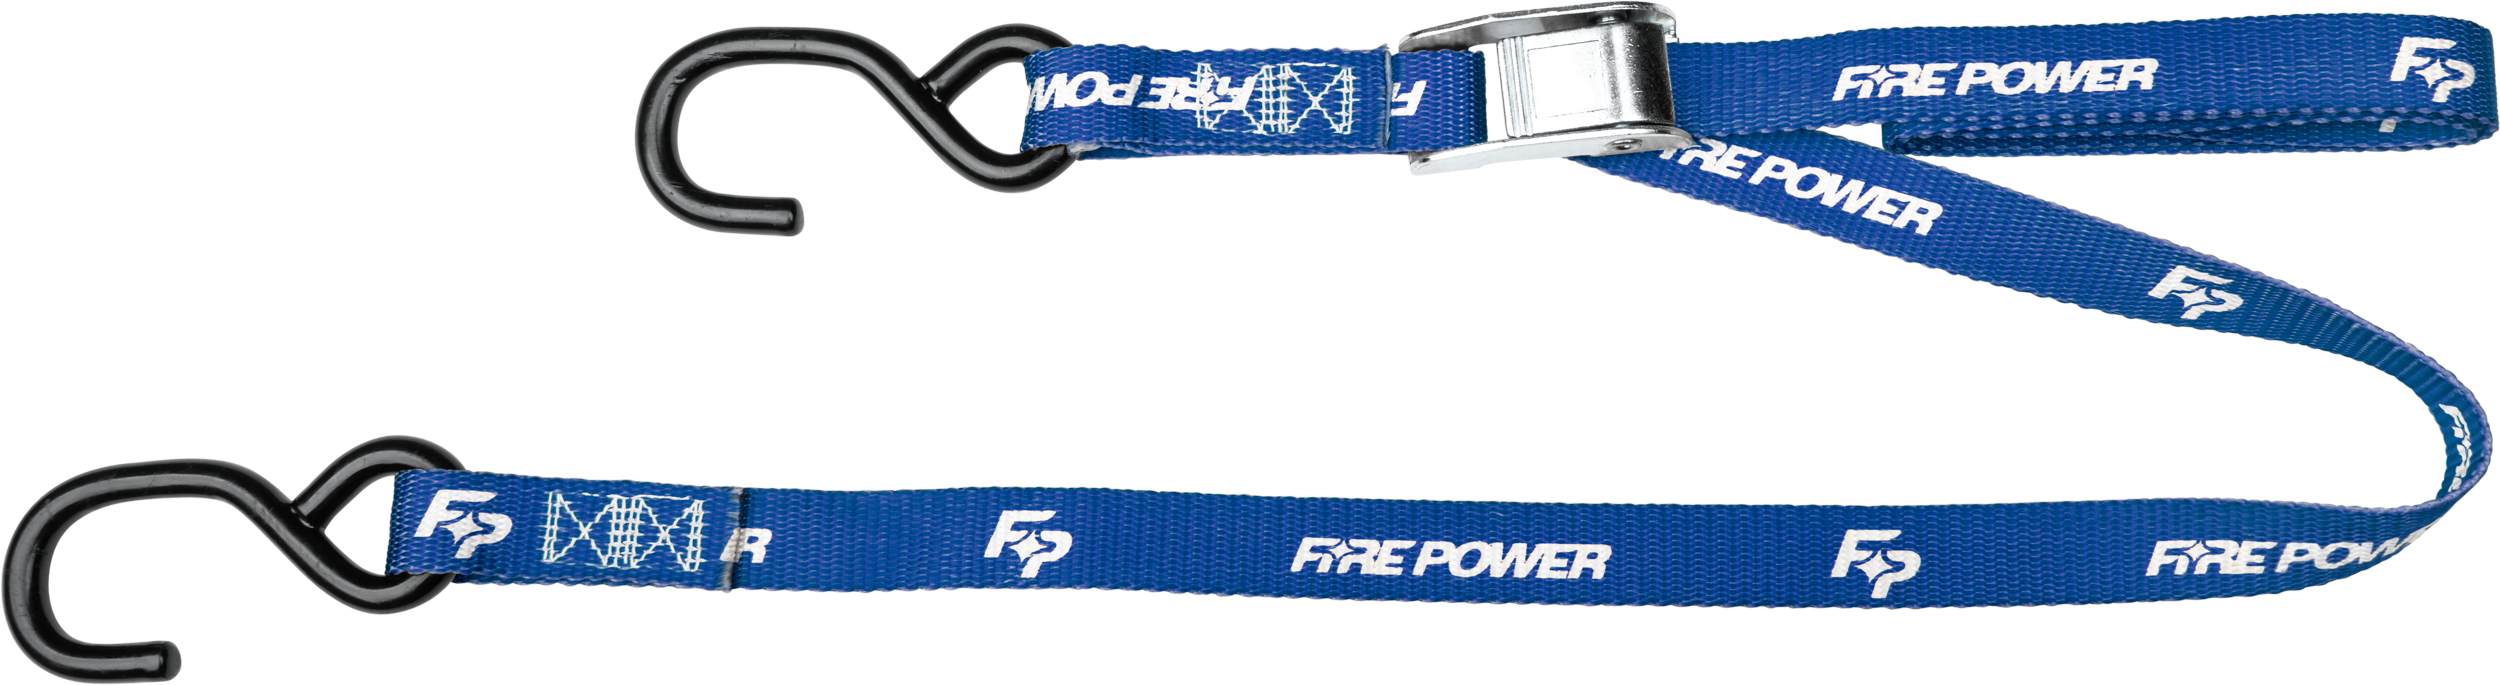 Fire Power - 1" TIE-DOWN BLUE 2/PK - 191361306495